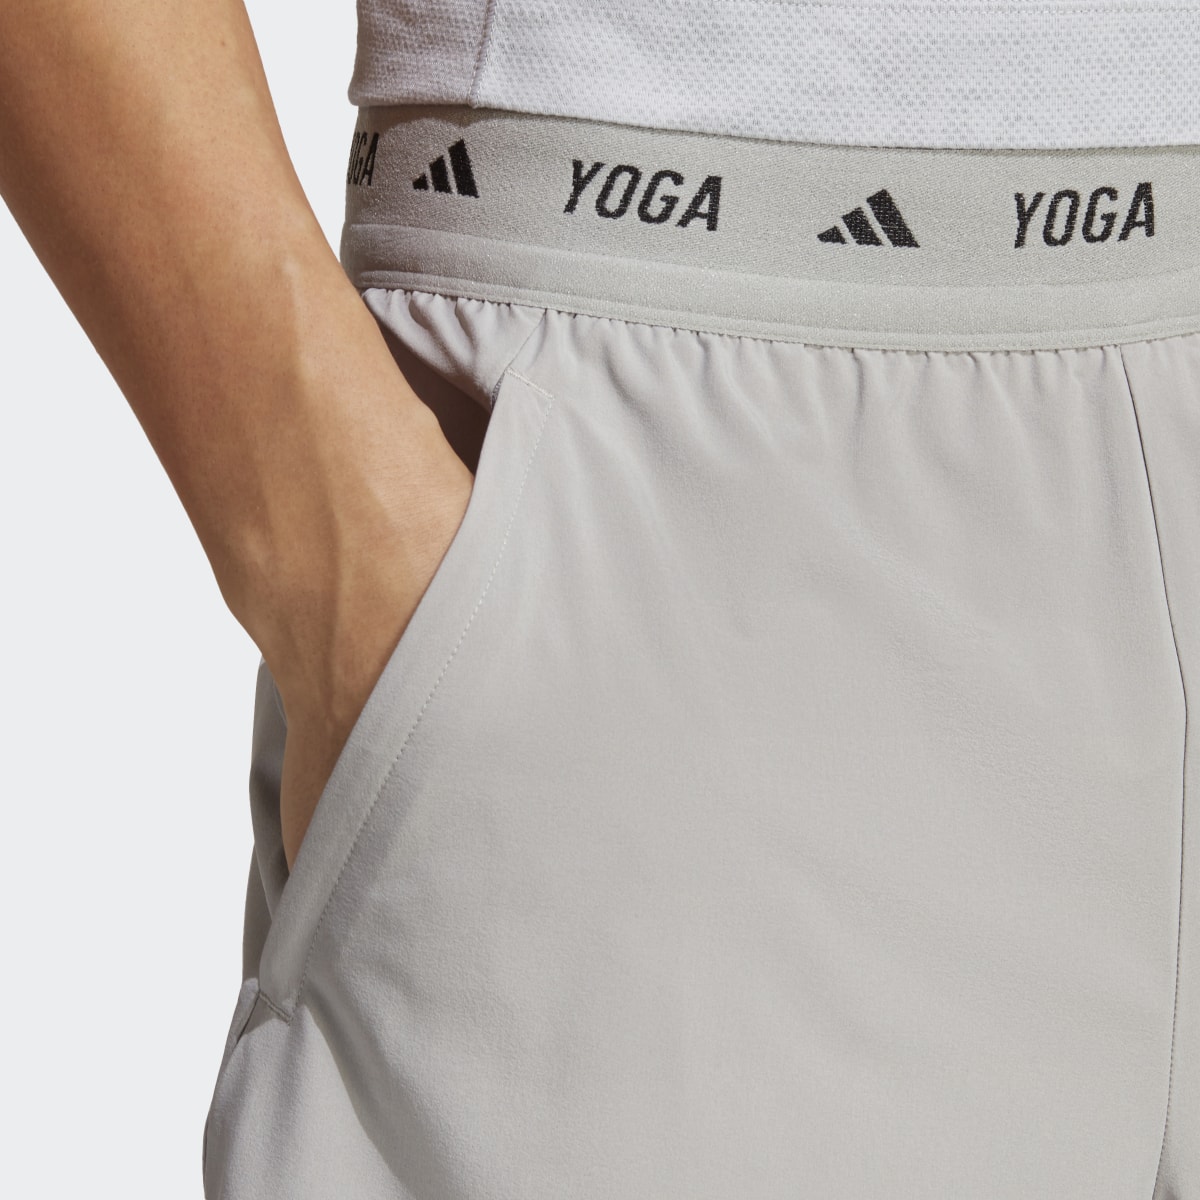 Adidas Yoga Training 2-in-1 Shorts. 6